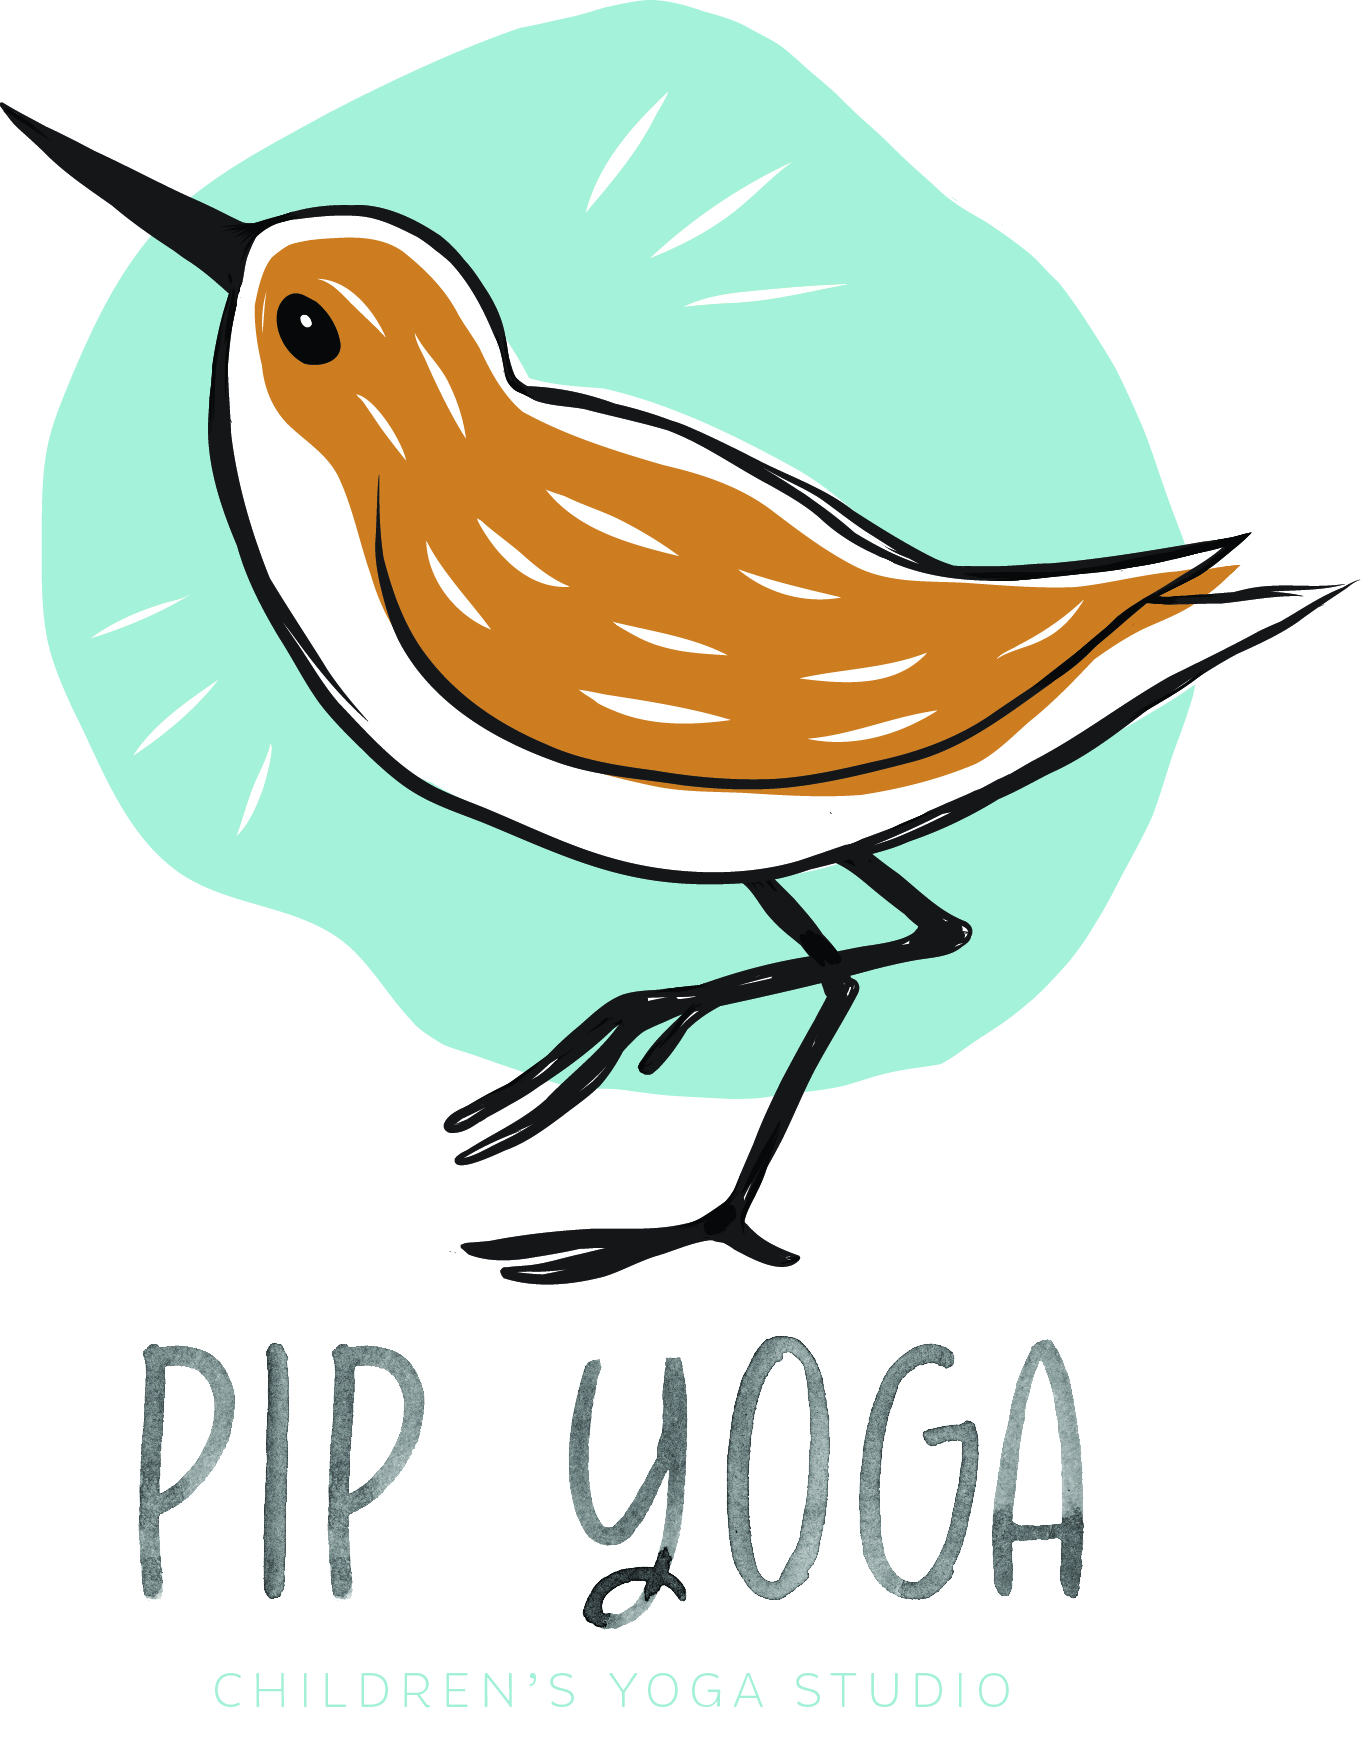 Pip Yoga Logo